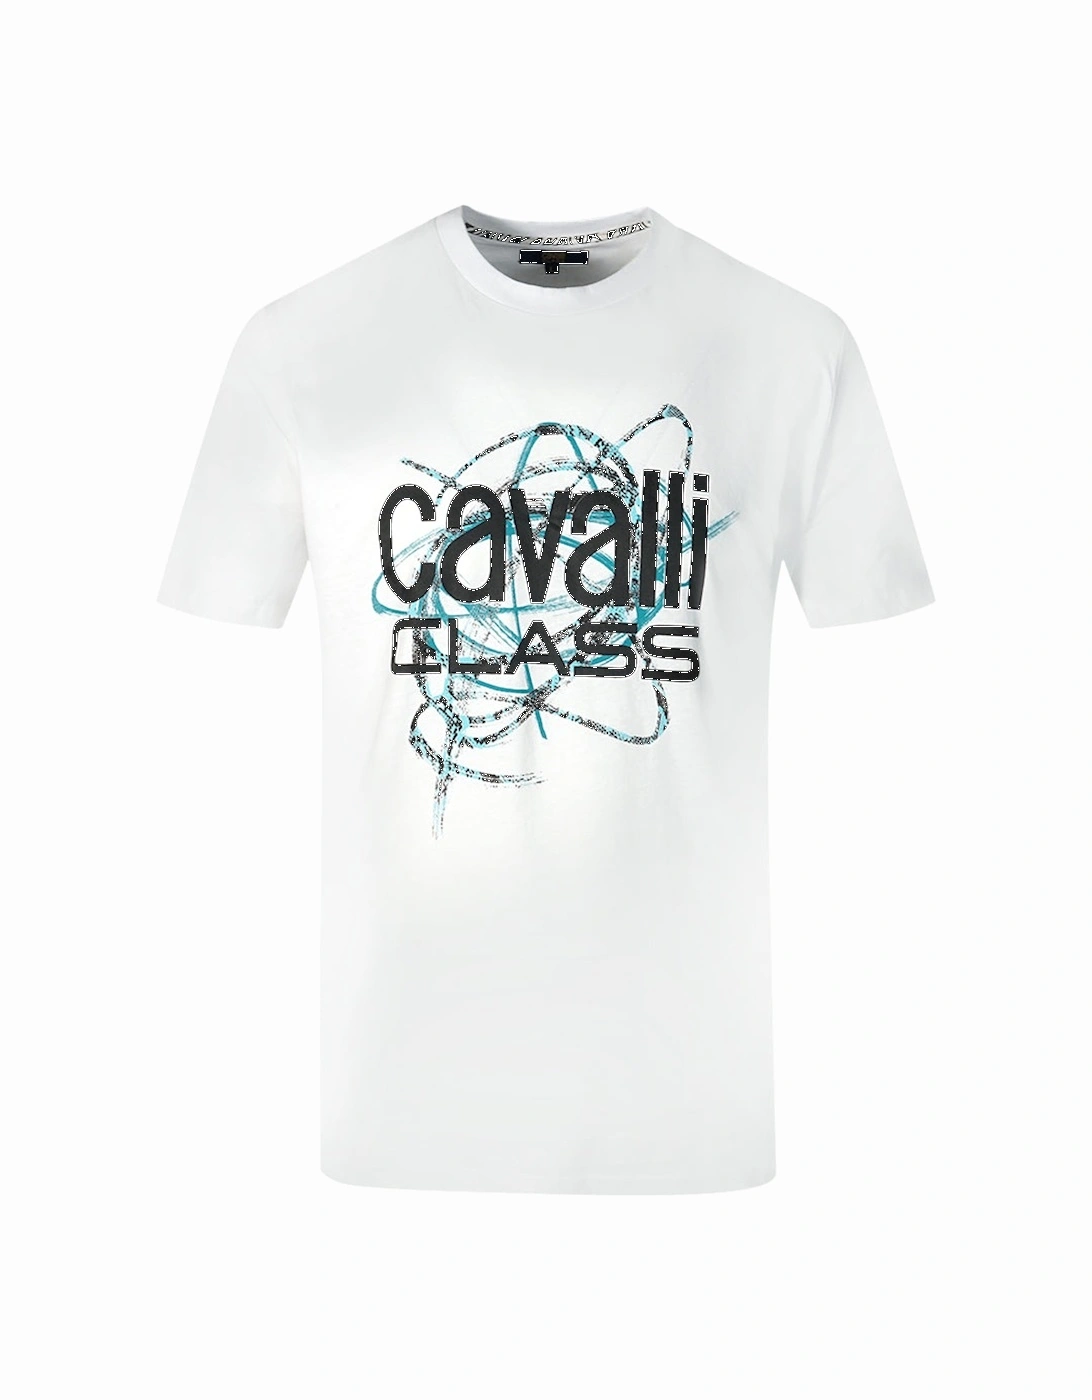 Cavalli Class Snake Skin Scribble Logo White T-Shirt, 3 of 2